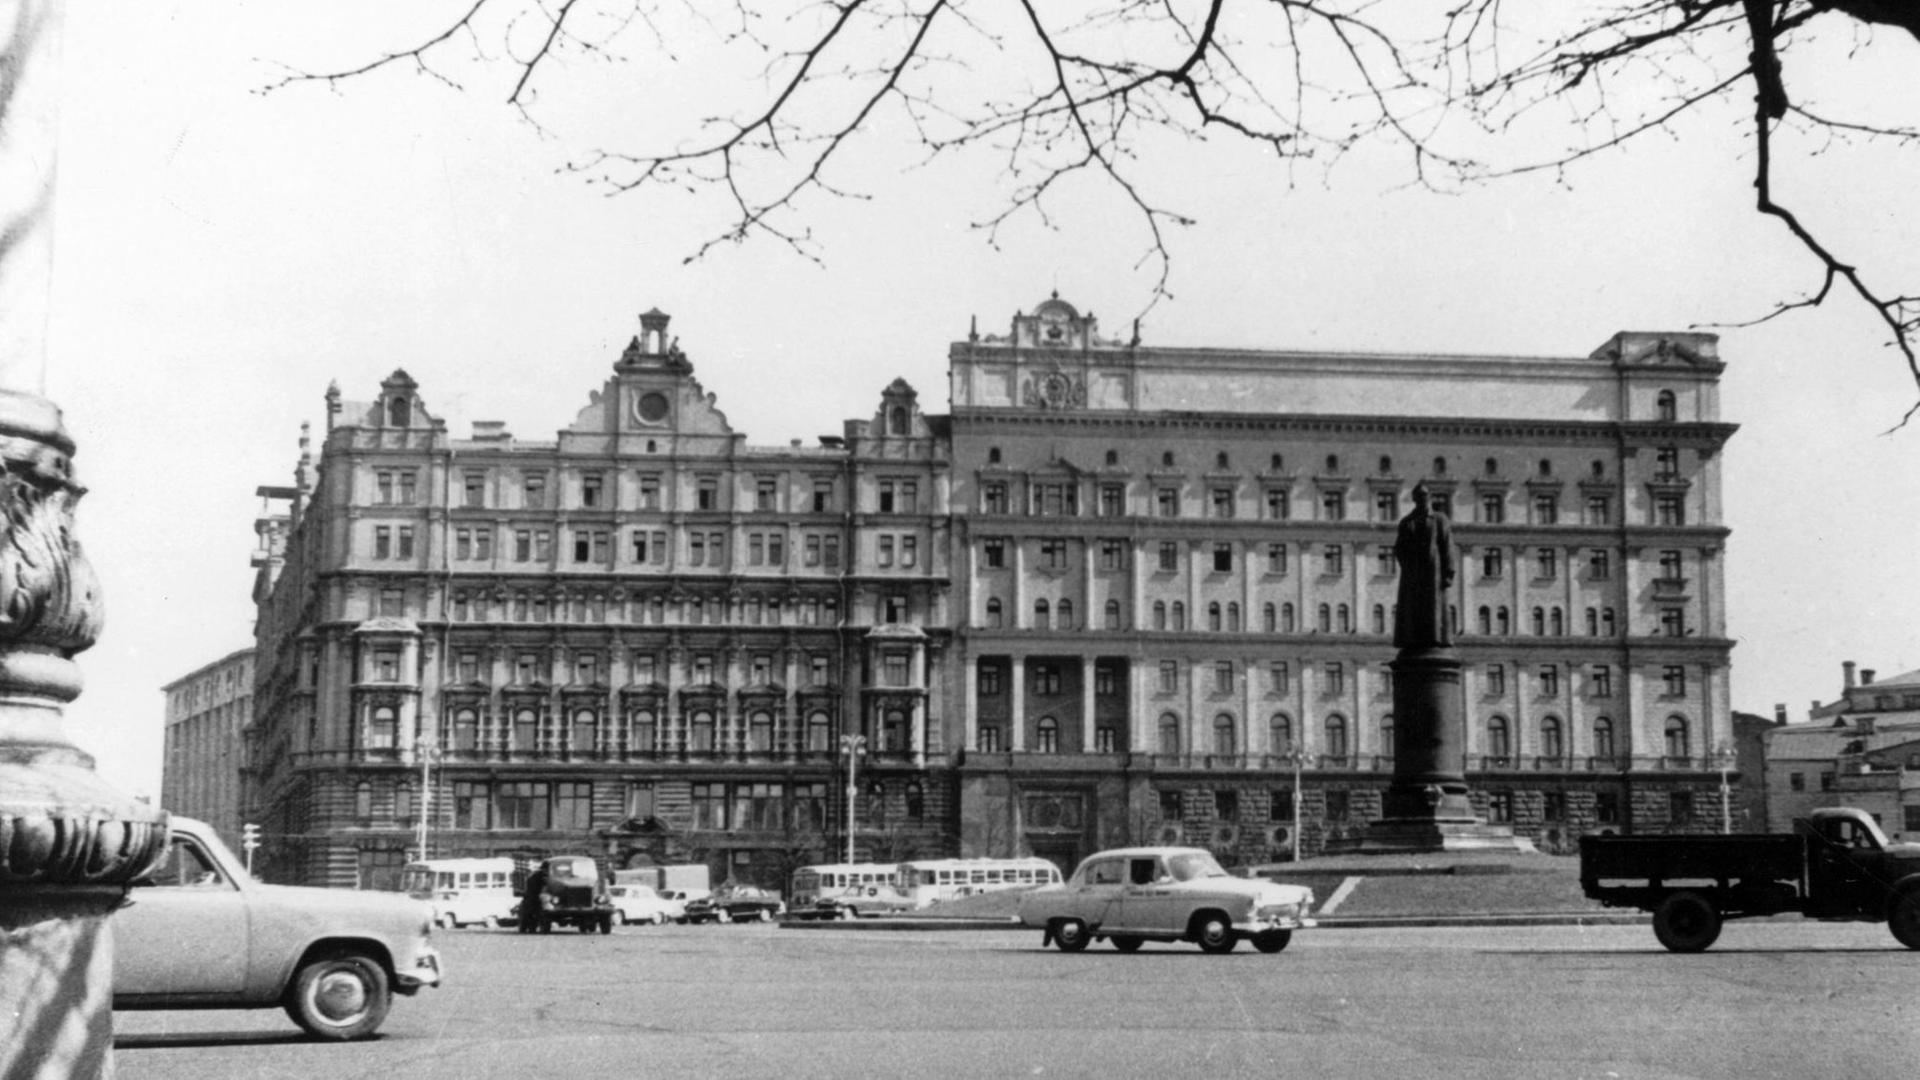 Hauptsitz des KGB am damaligen Dzerzhinsky-Platz in Moskau. In der Mitte des Platzes die Statue des ersten KGB-Chefs Feliks Dzerzhinsky. Rundherum fahren Autos.